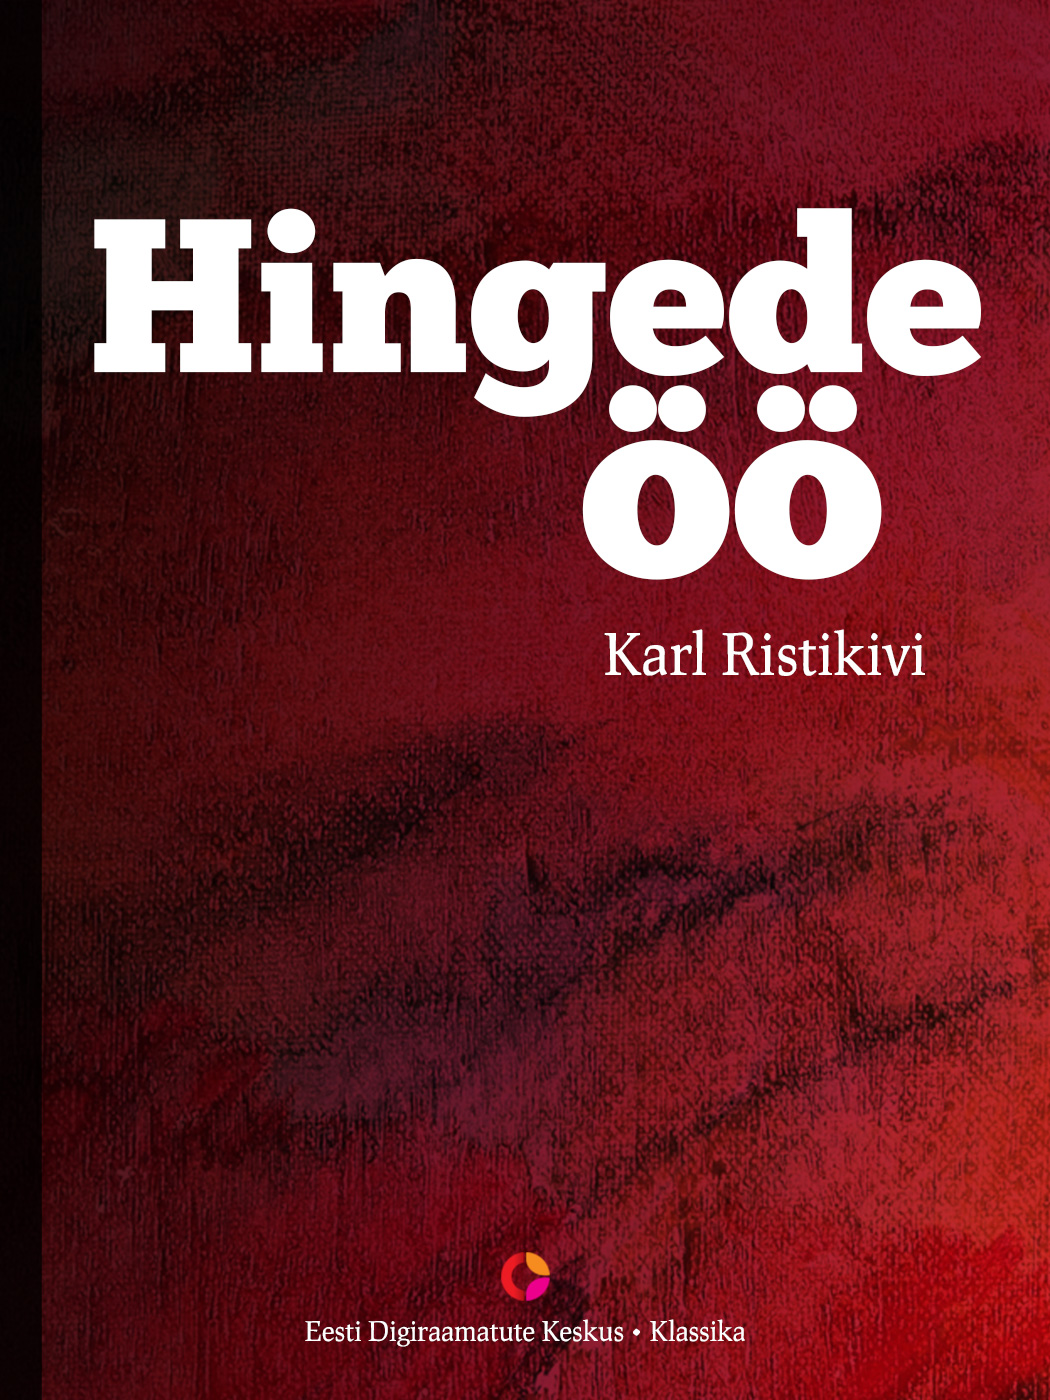 Книга Hingede öö из серии , созданная Karl Ristikivi, может относится к жанру Литература 20 века, Зарубежная классика. Стоимость электронной книги Hingede öö с идентификатором 21184700 составляет 427.84 руб.